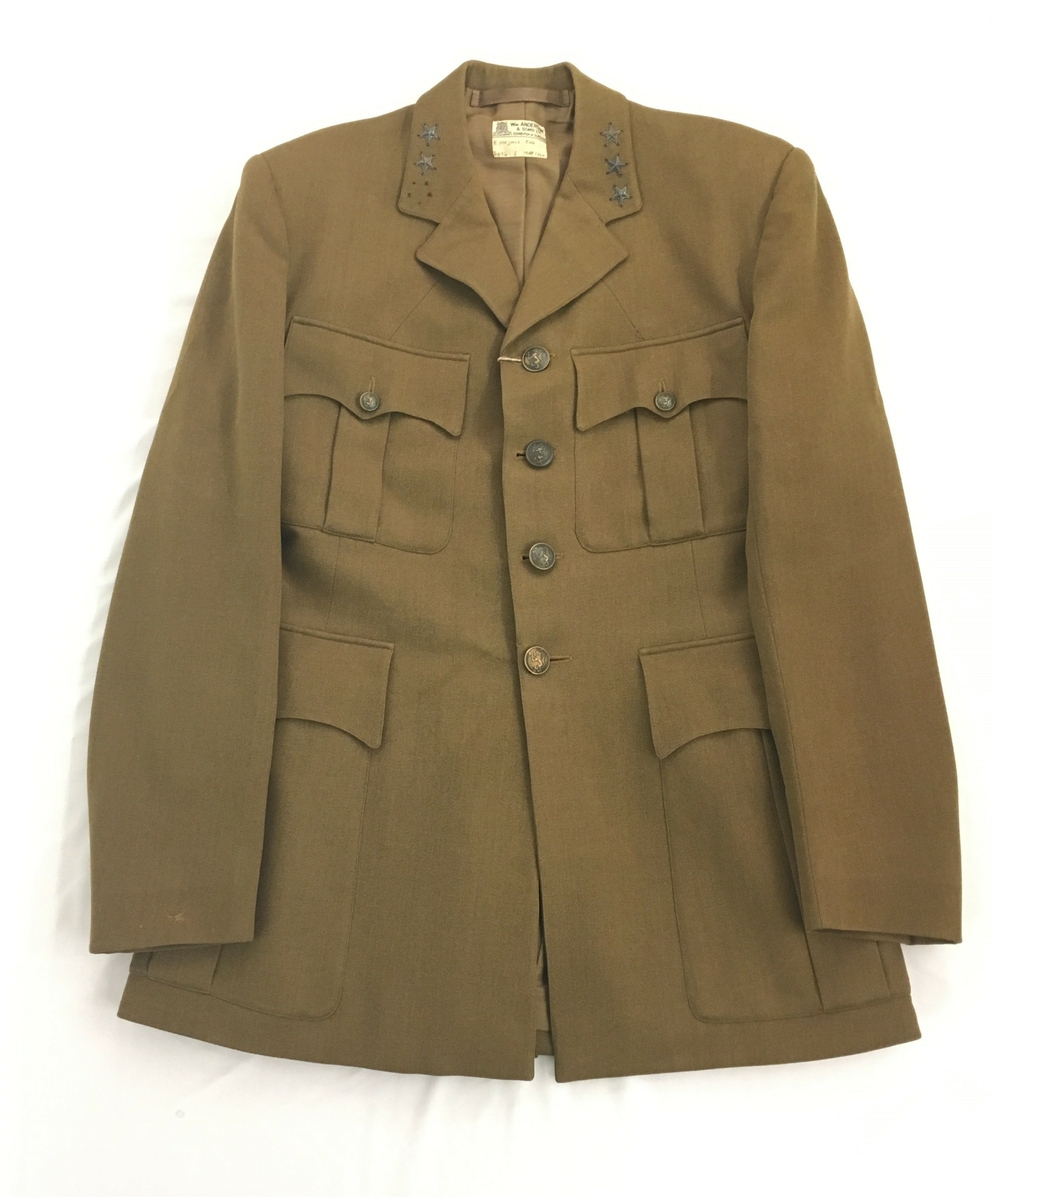 Brun uniform som består av jakke, bukse med belte, hatt og  lærbelte.